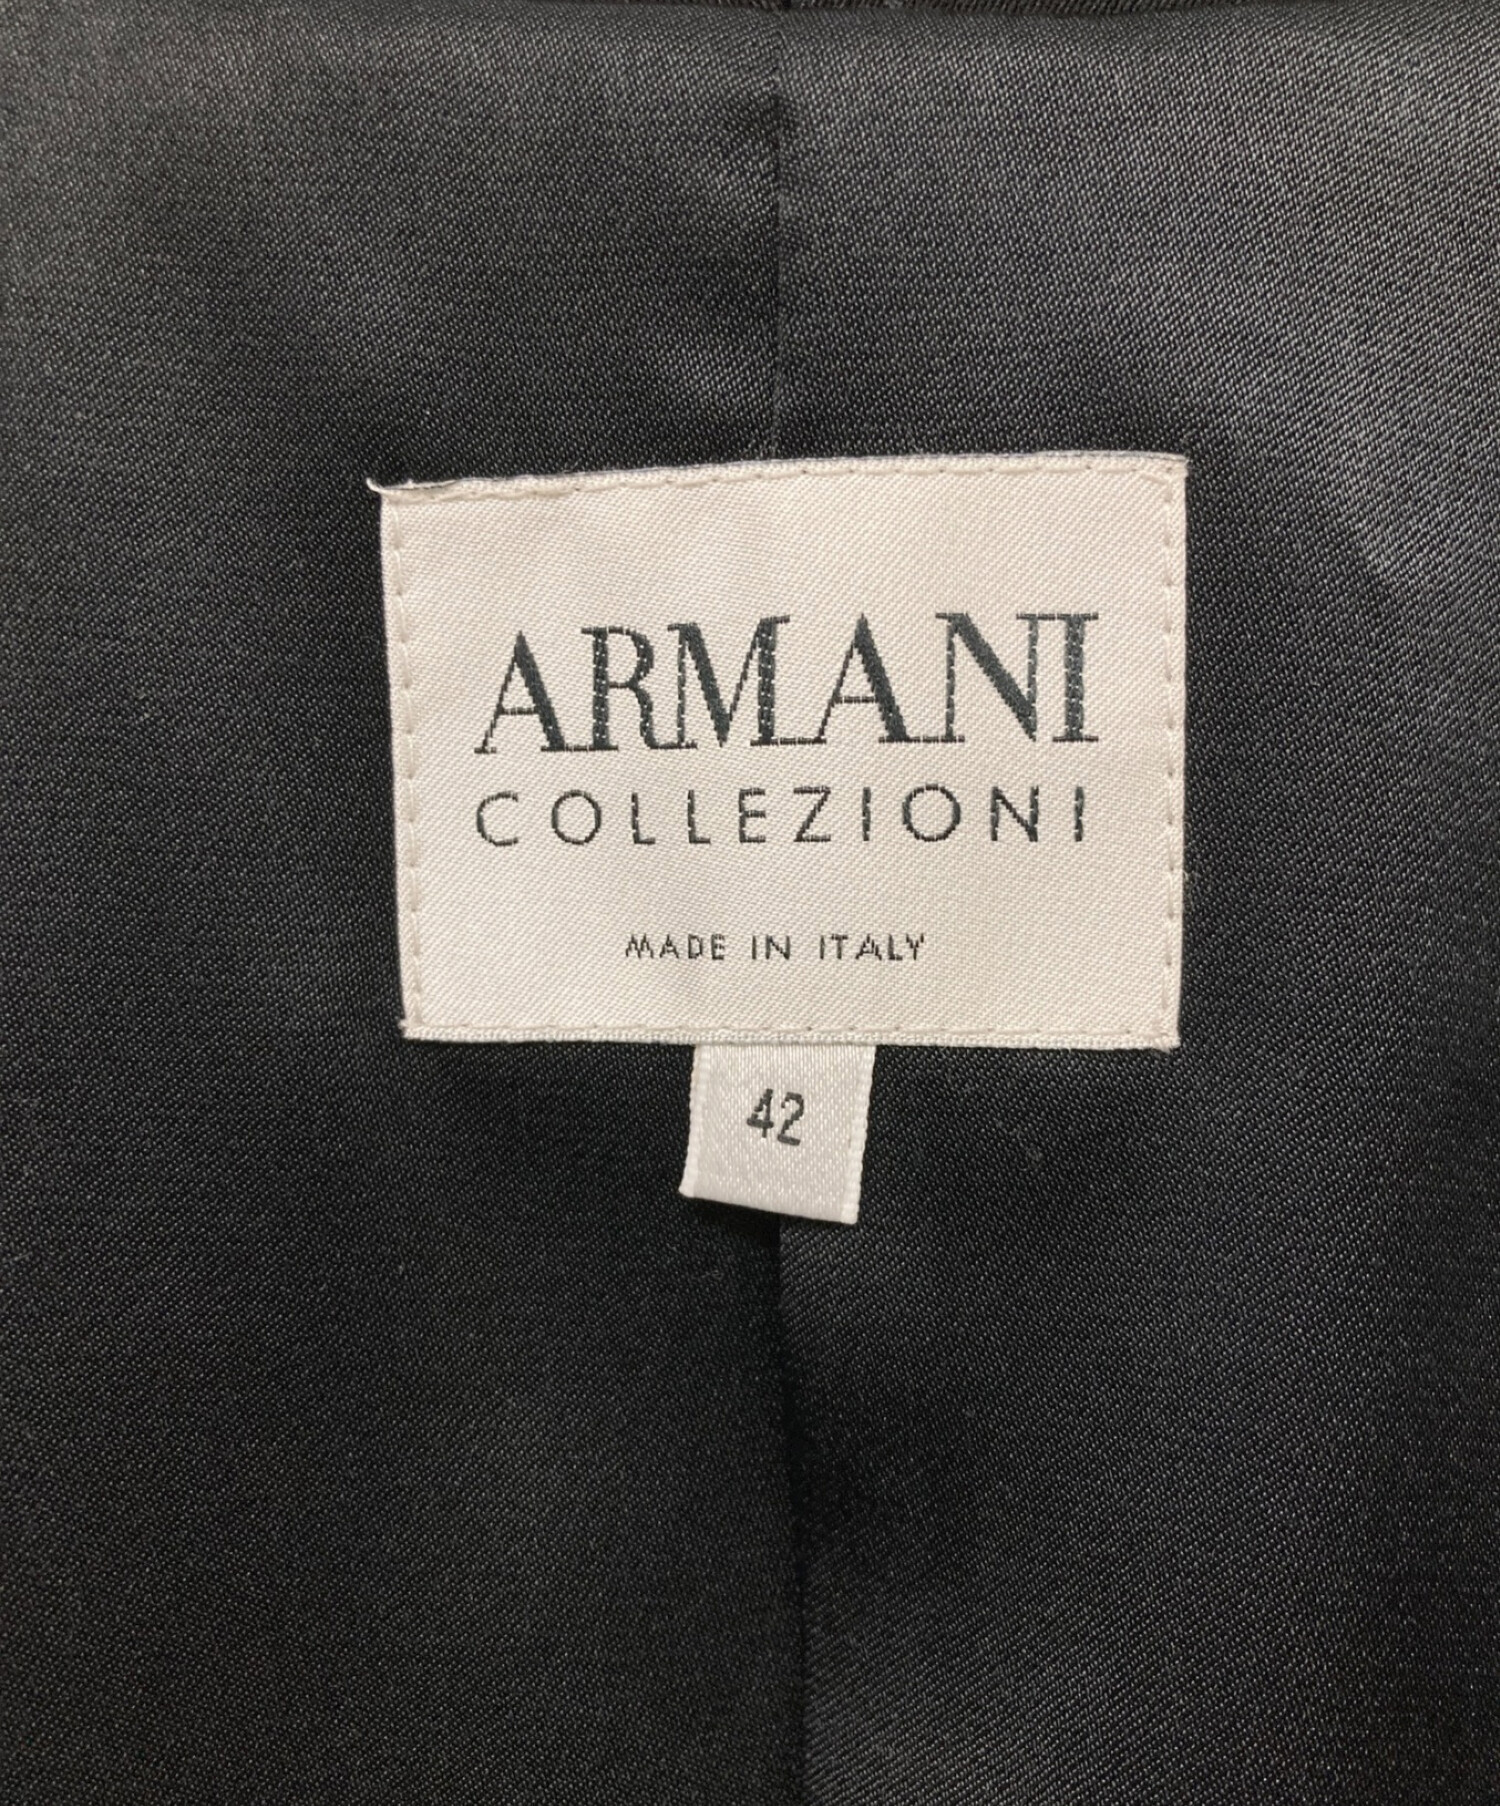 ARMANI COLLEZIONI  ジャケット&ワンピースセット 42